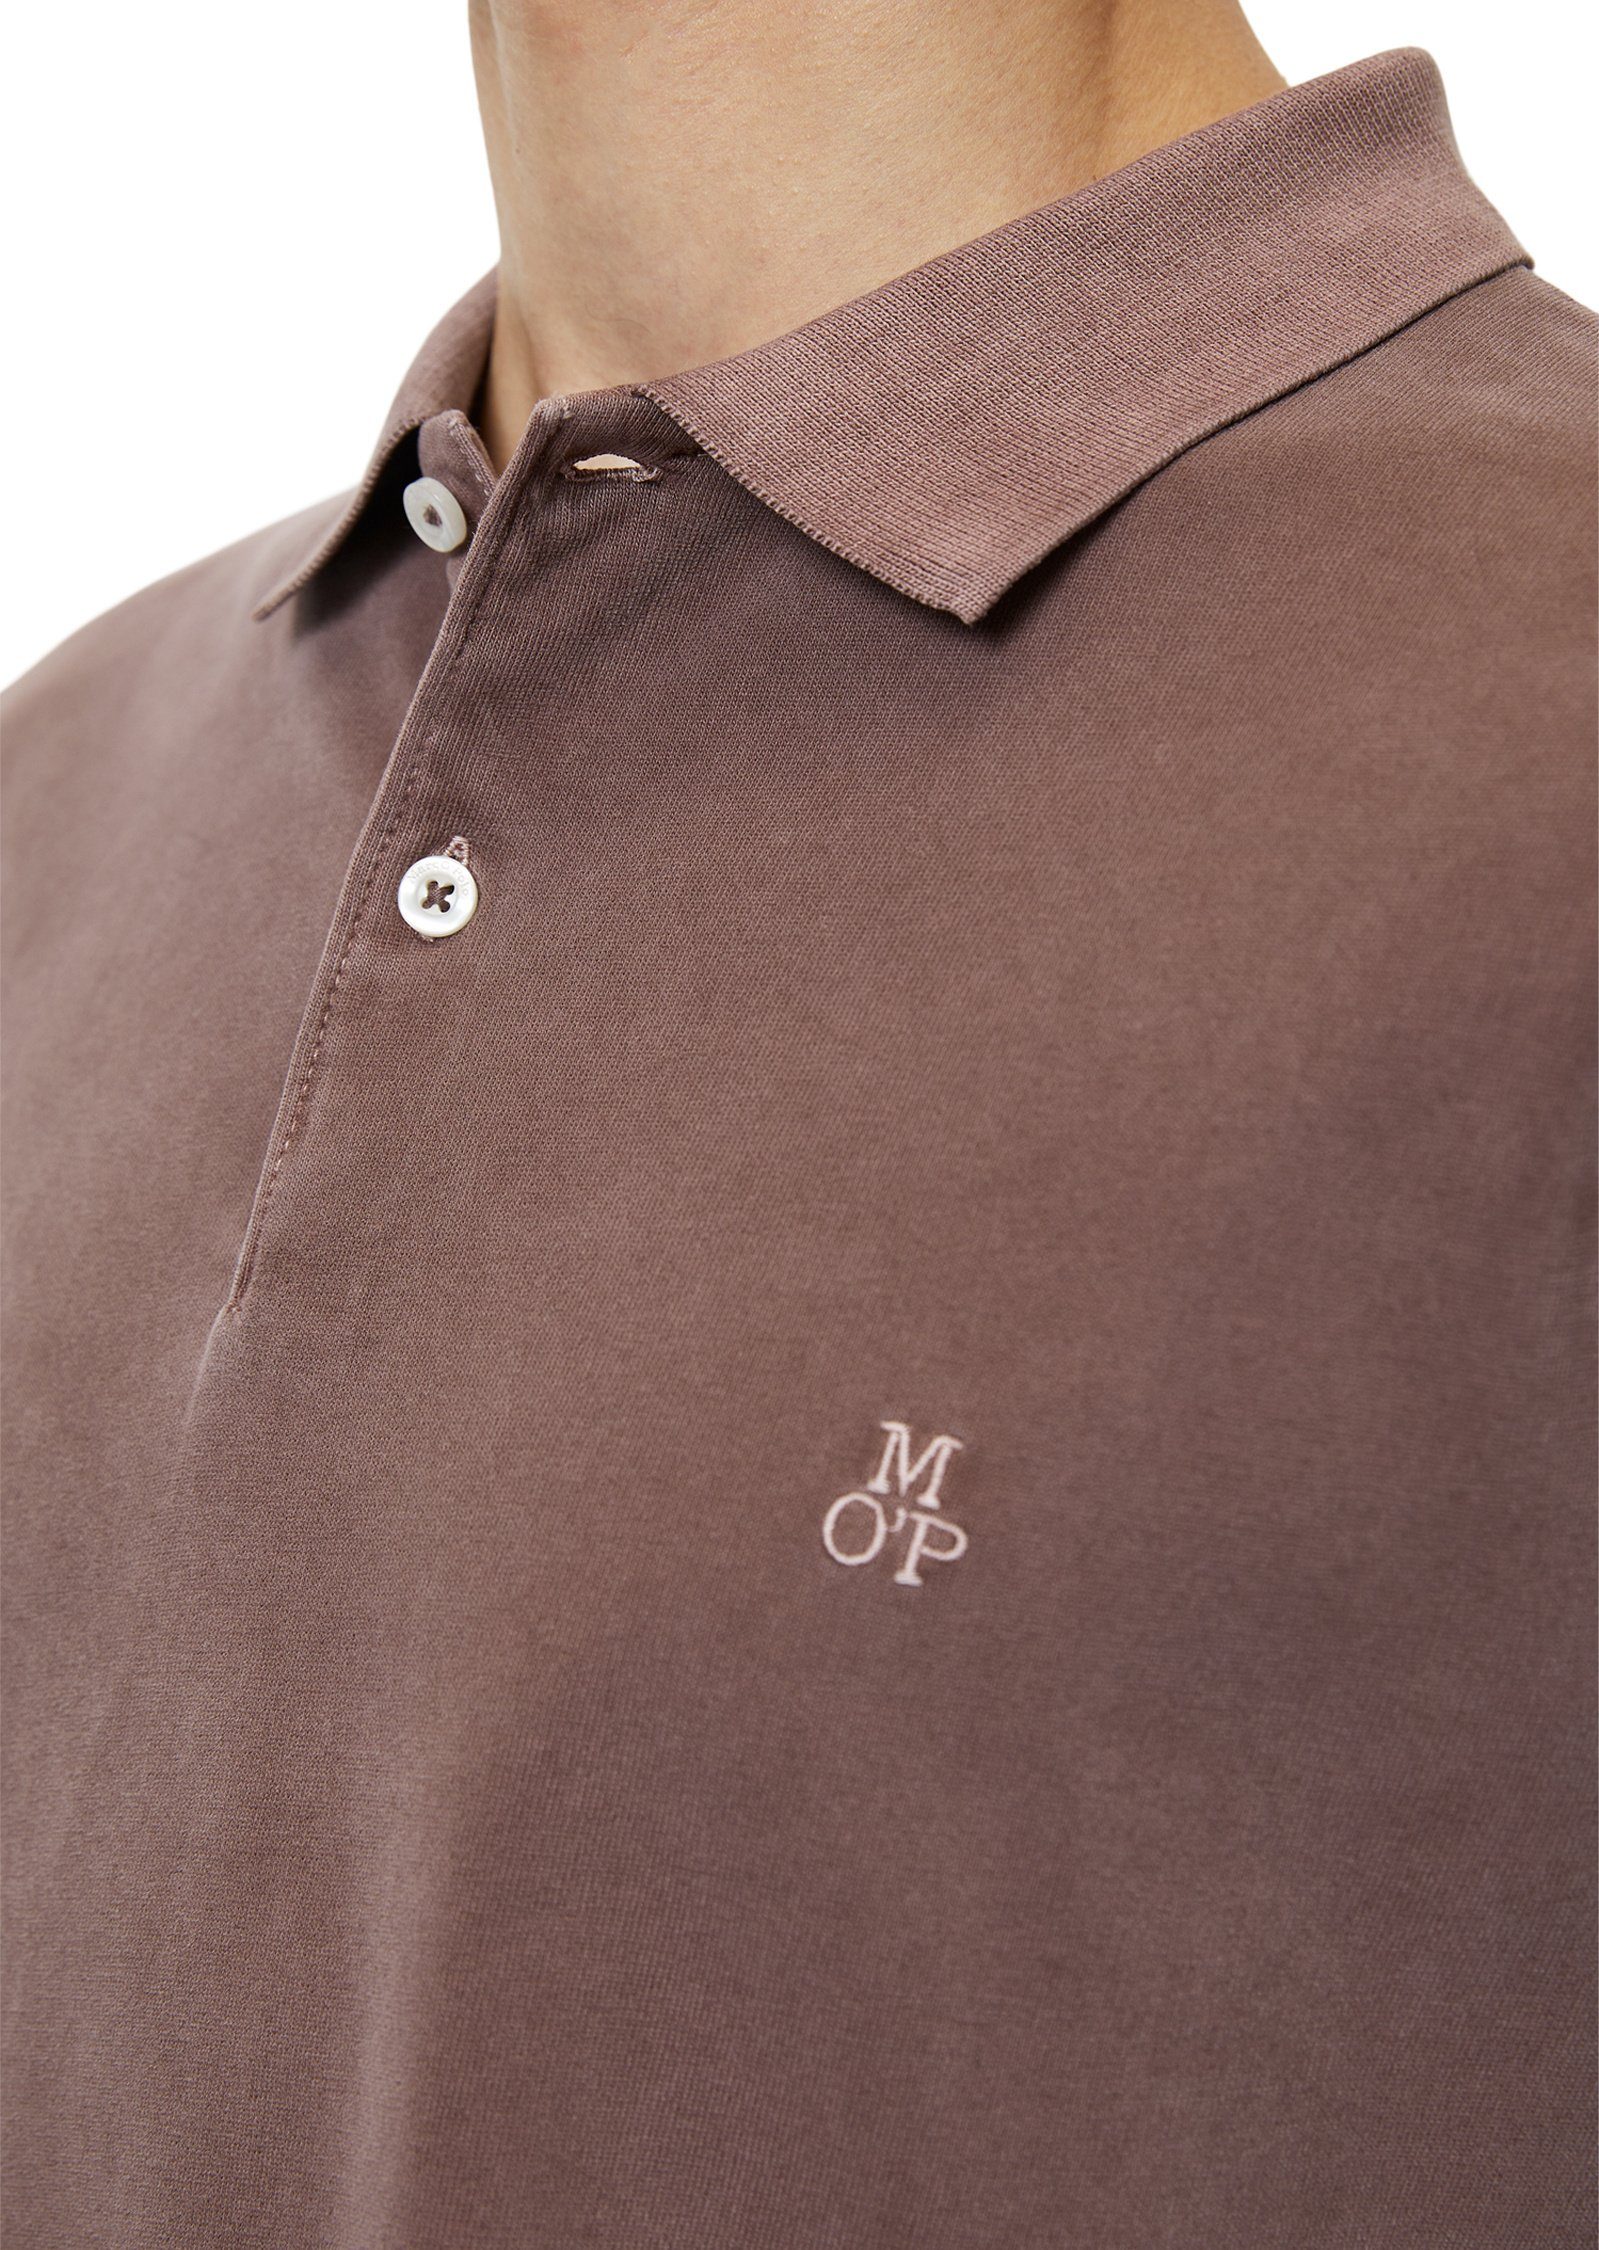 Marc O'Polo schwerer in Soft-Touch-Jersey-Qualität Langarm-Poloshirt braun